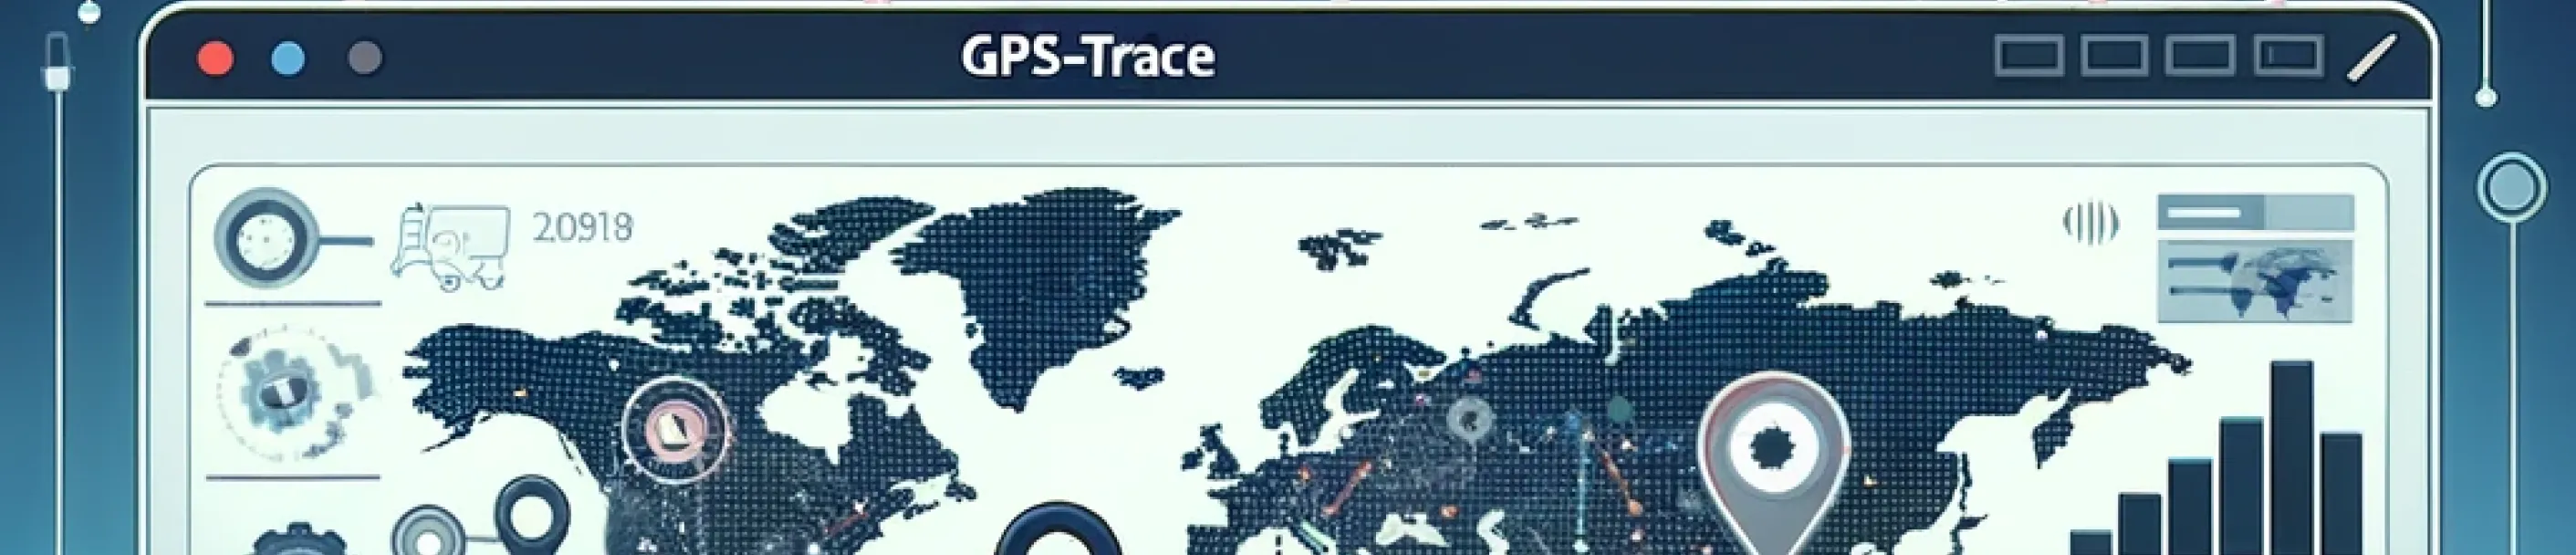 Партнерская сеть GPS-Trace